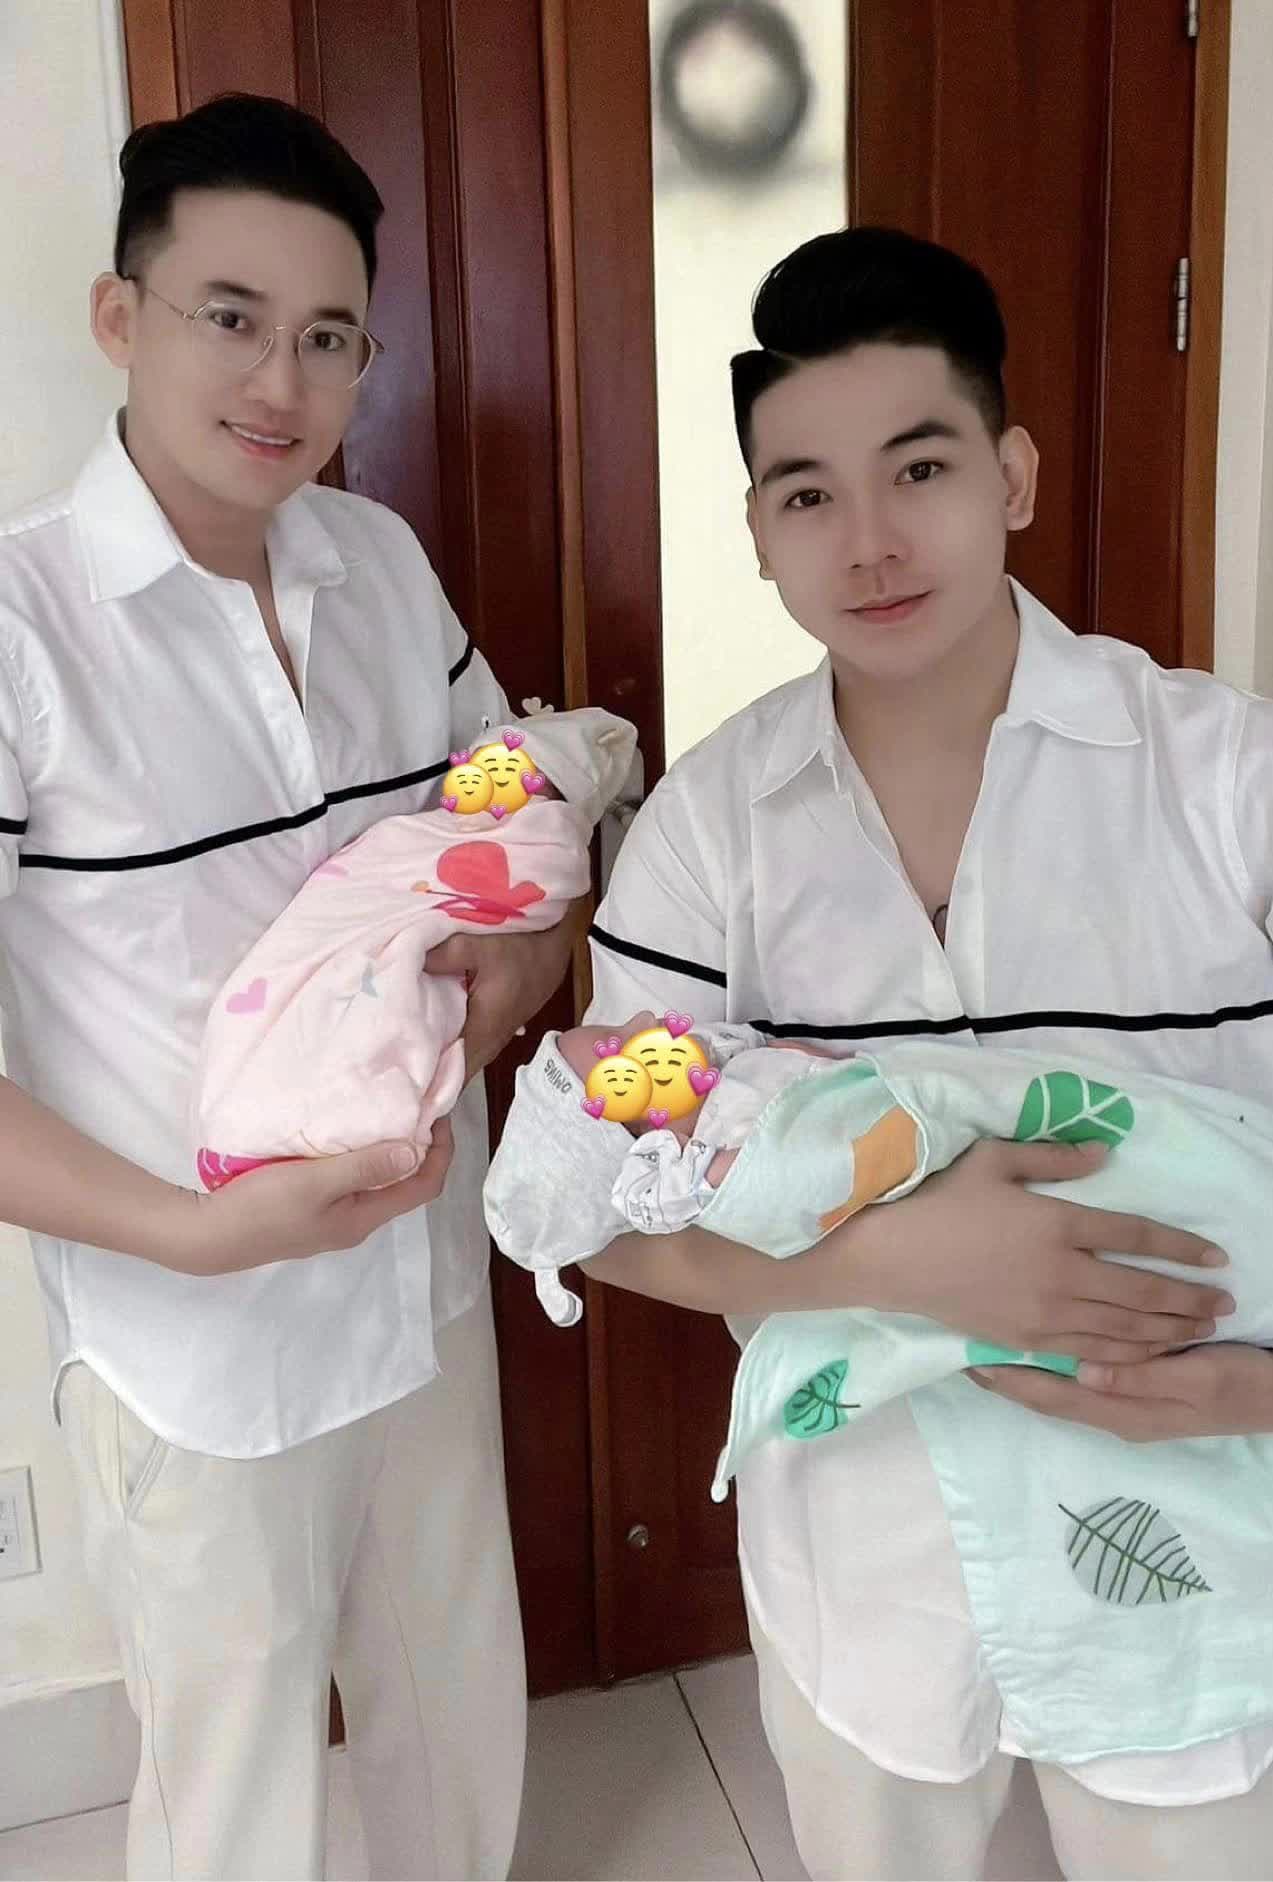 Cuộc sống của 2 gia đình Vbiz: An Nguy sinh con gái ở Mỹ, cặp đôi sao Việt cùng lên chức bố bỉm sữa - Ảnh 3.